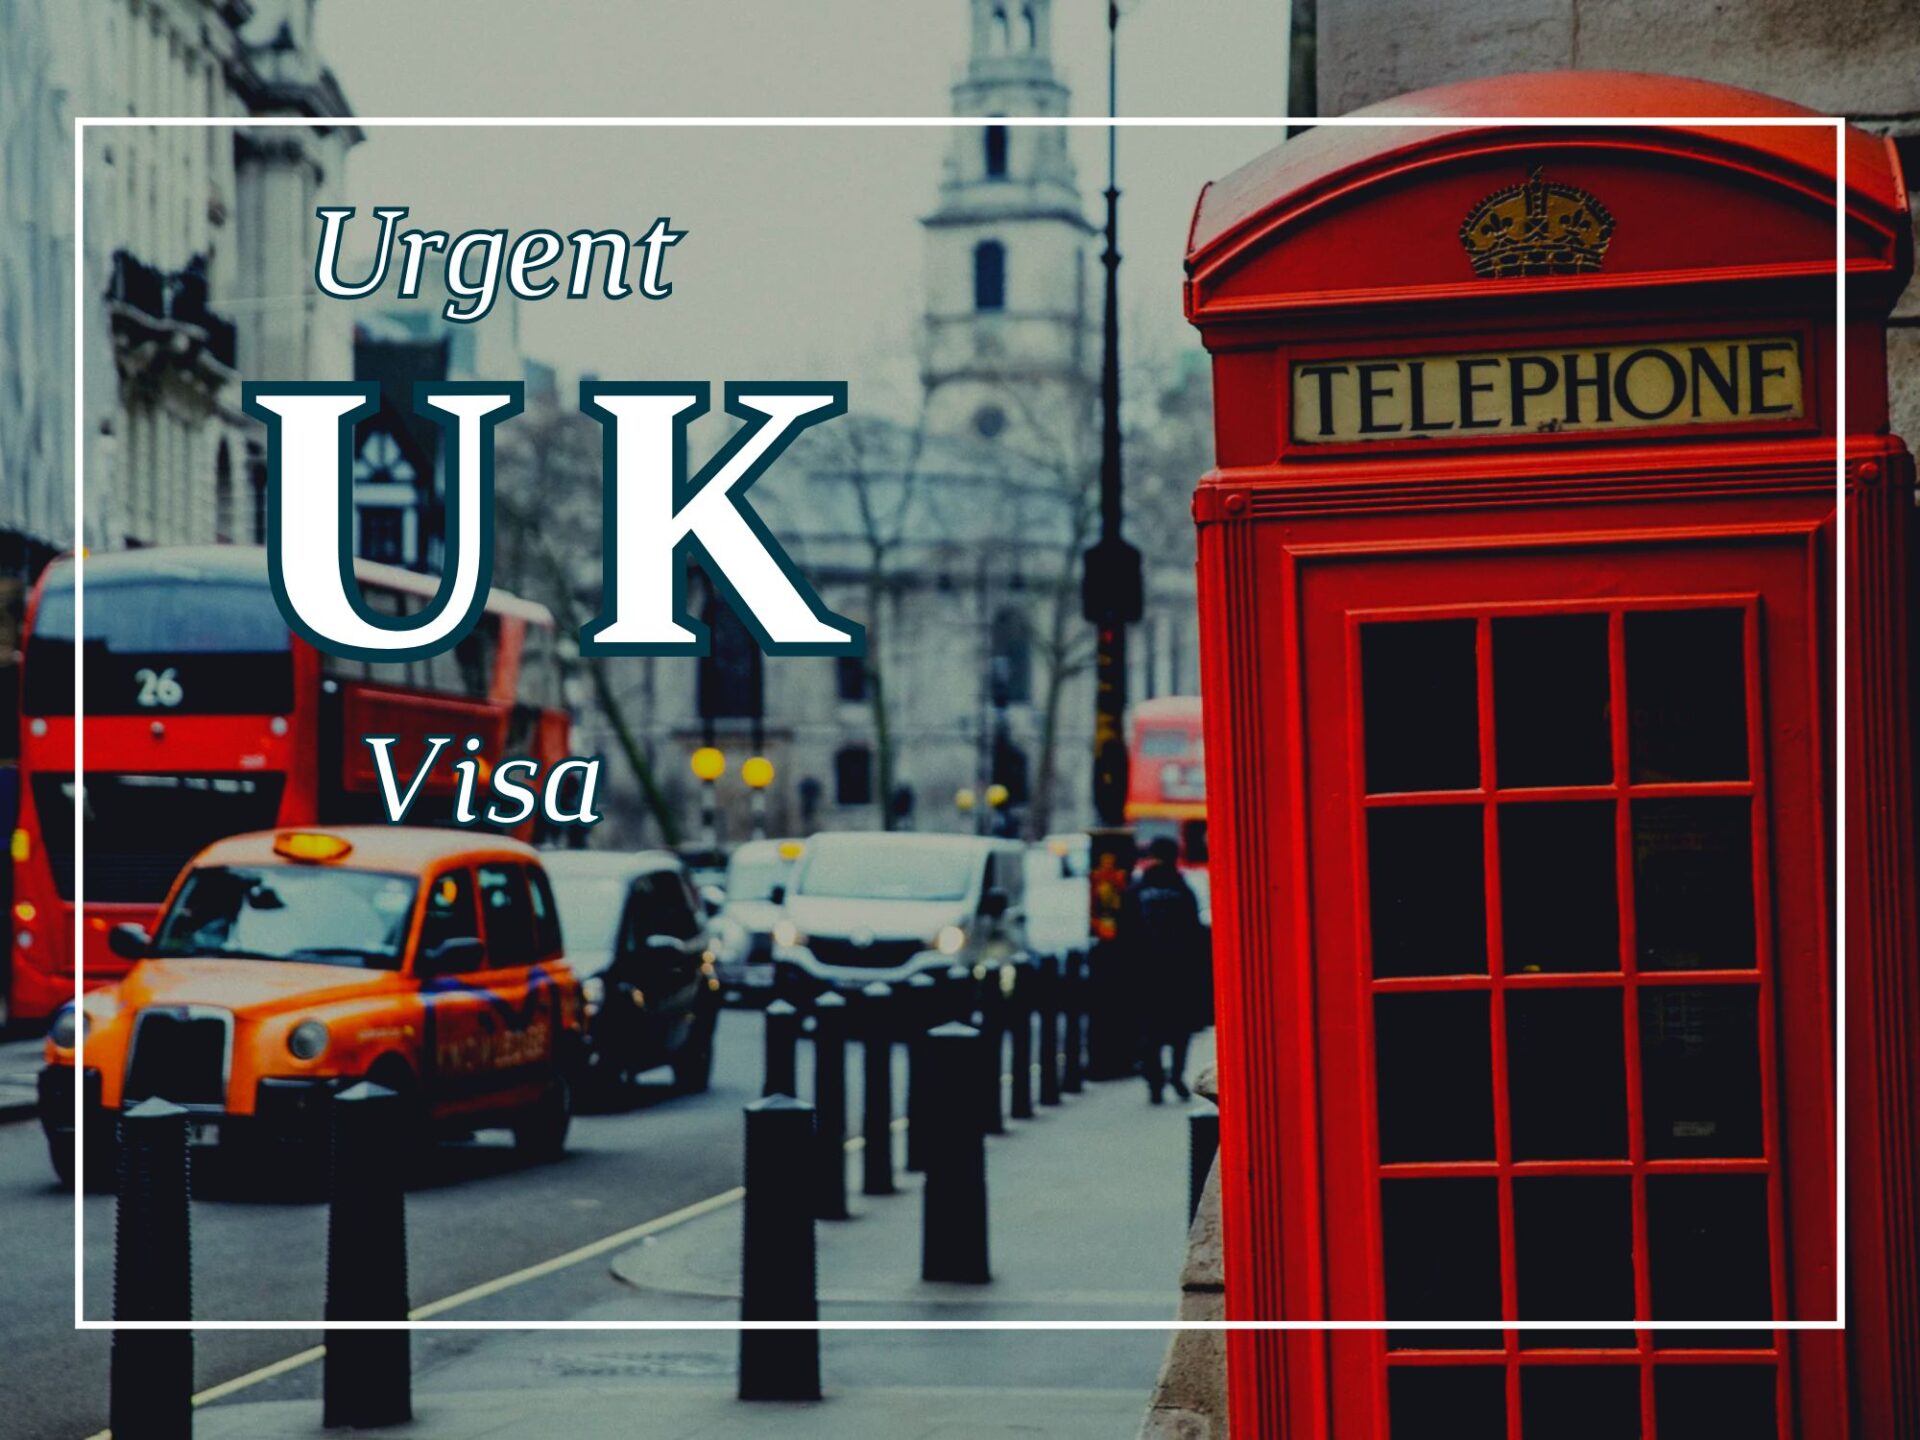 uk visa from uae